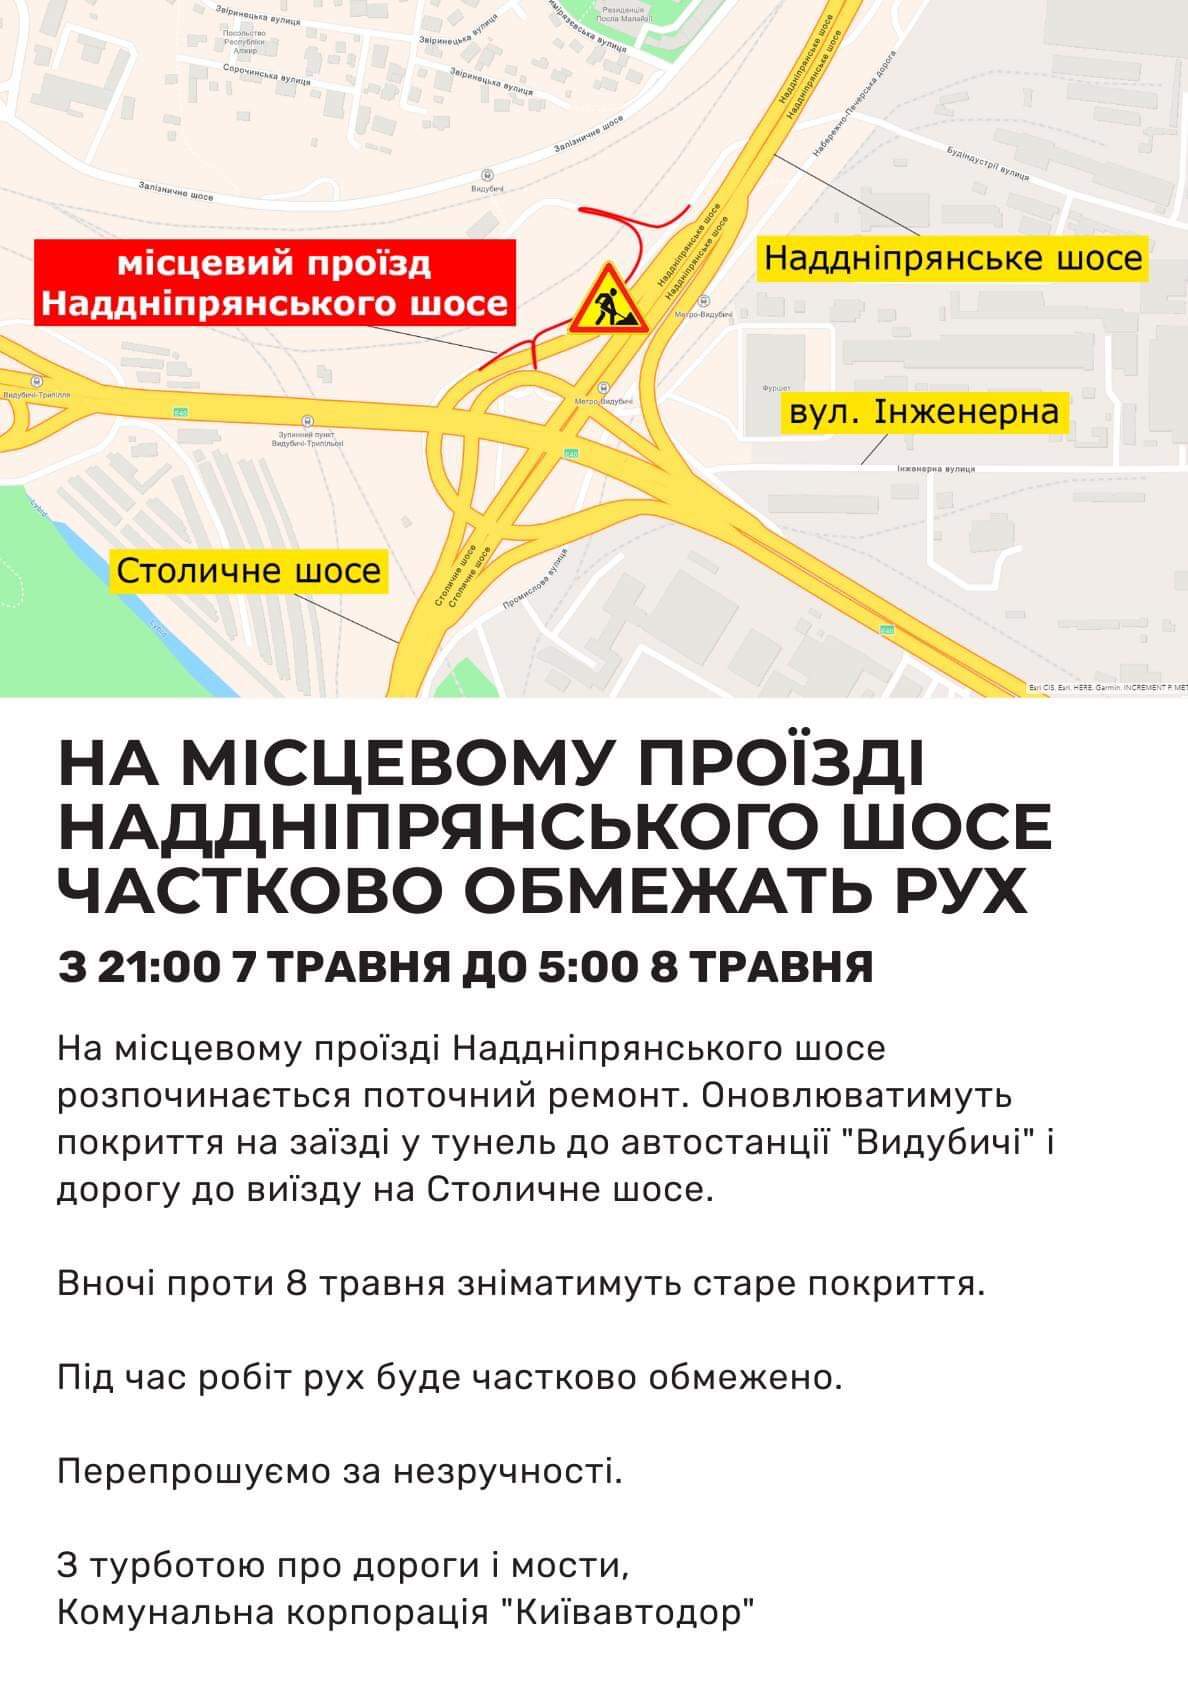 В ніч на п'ятницю частково обмежать проїзд по Наддніпрянському шосе столиці